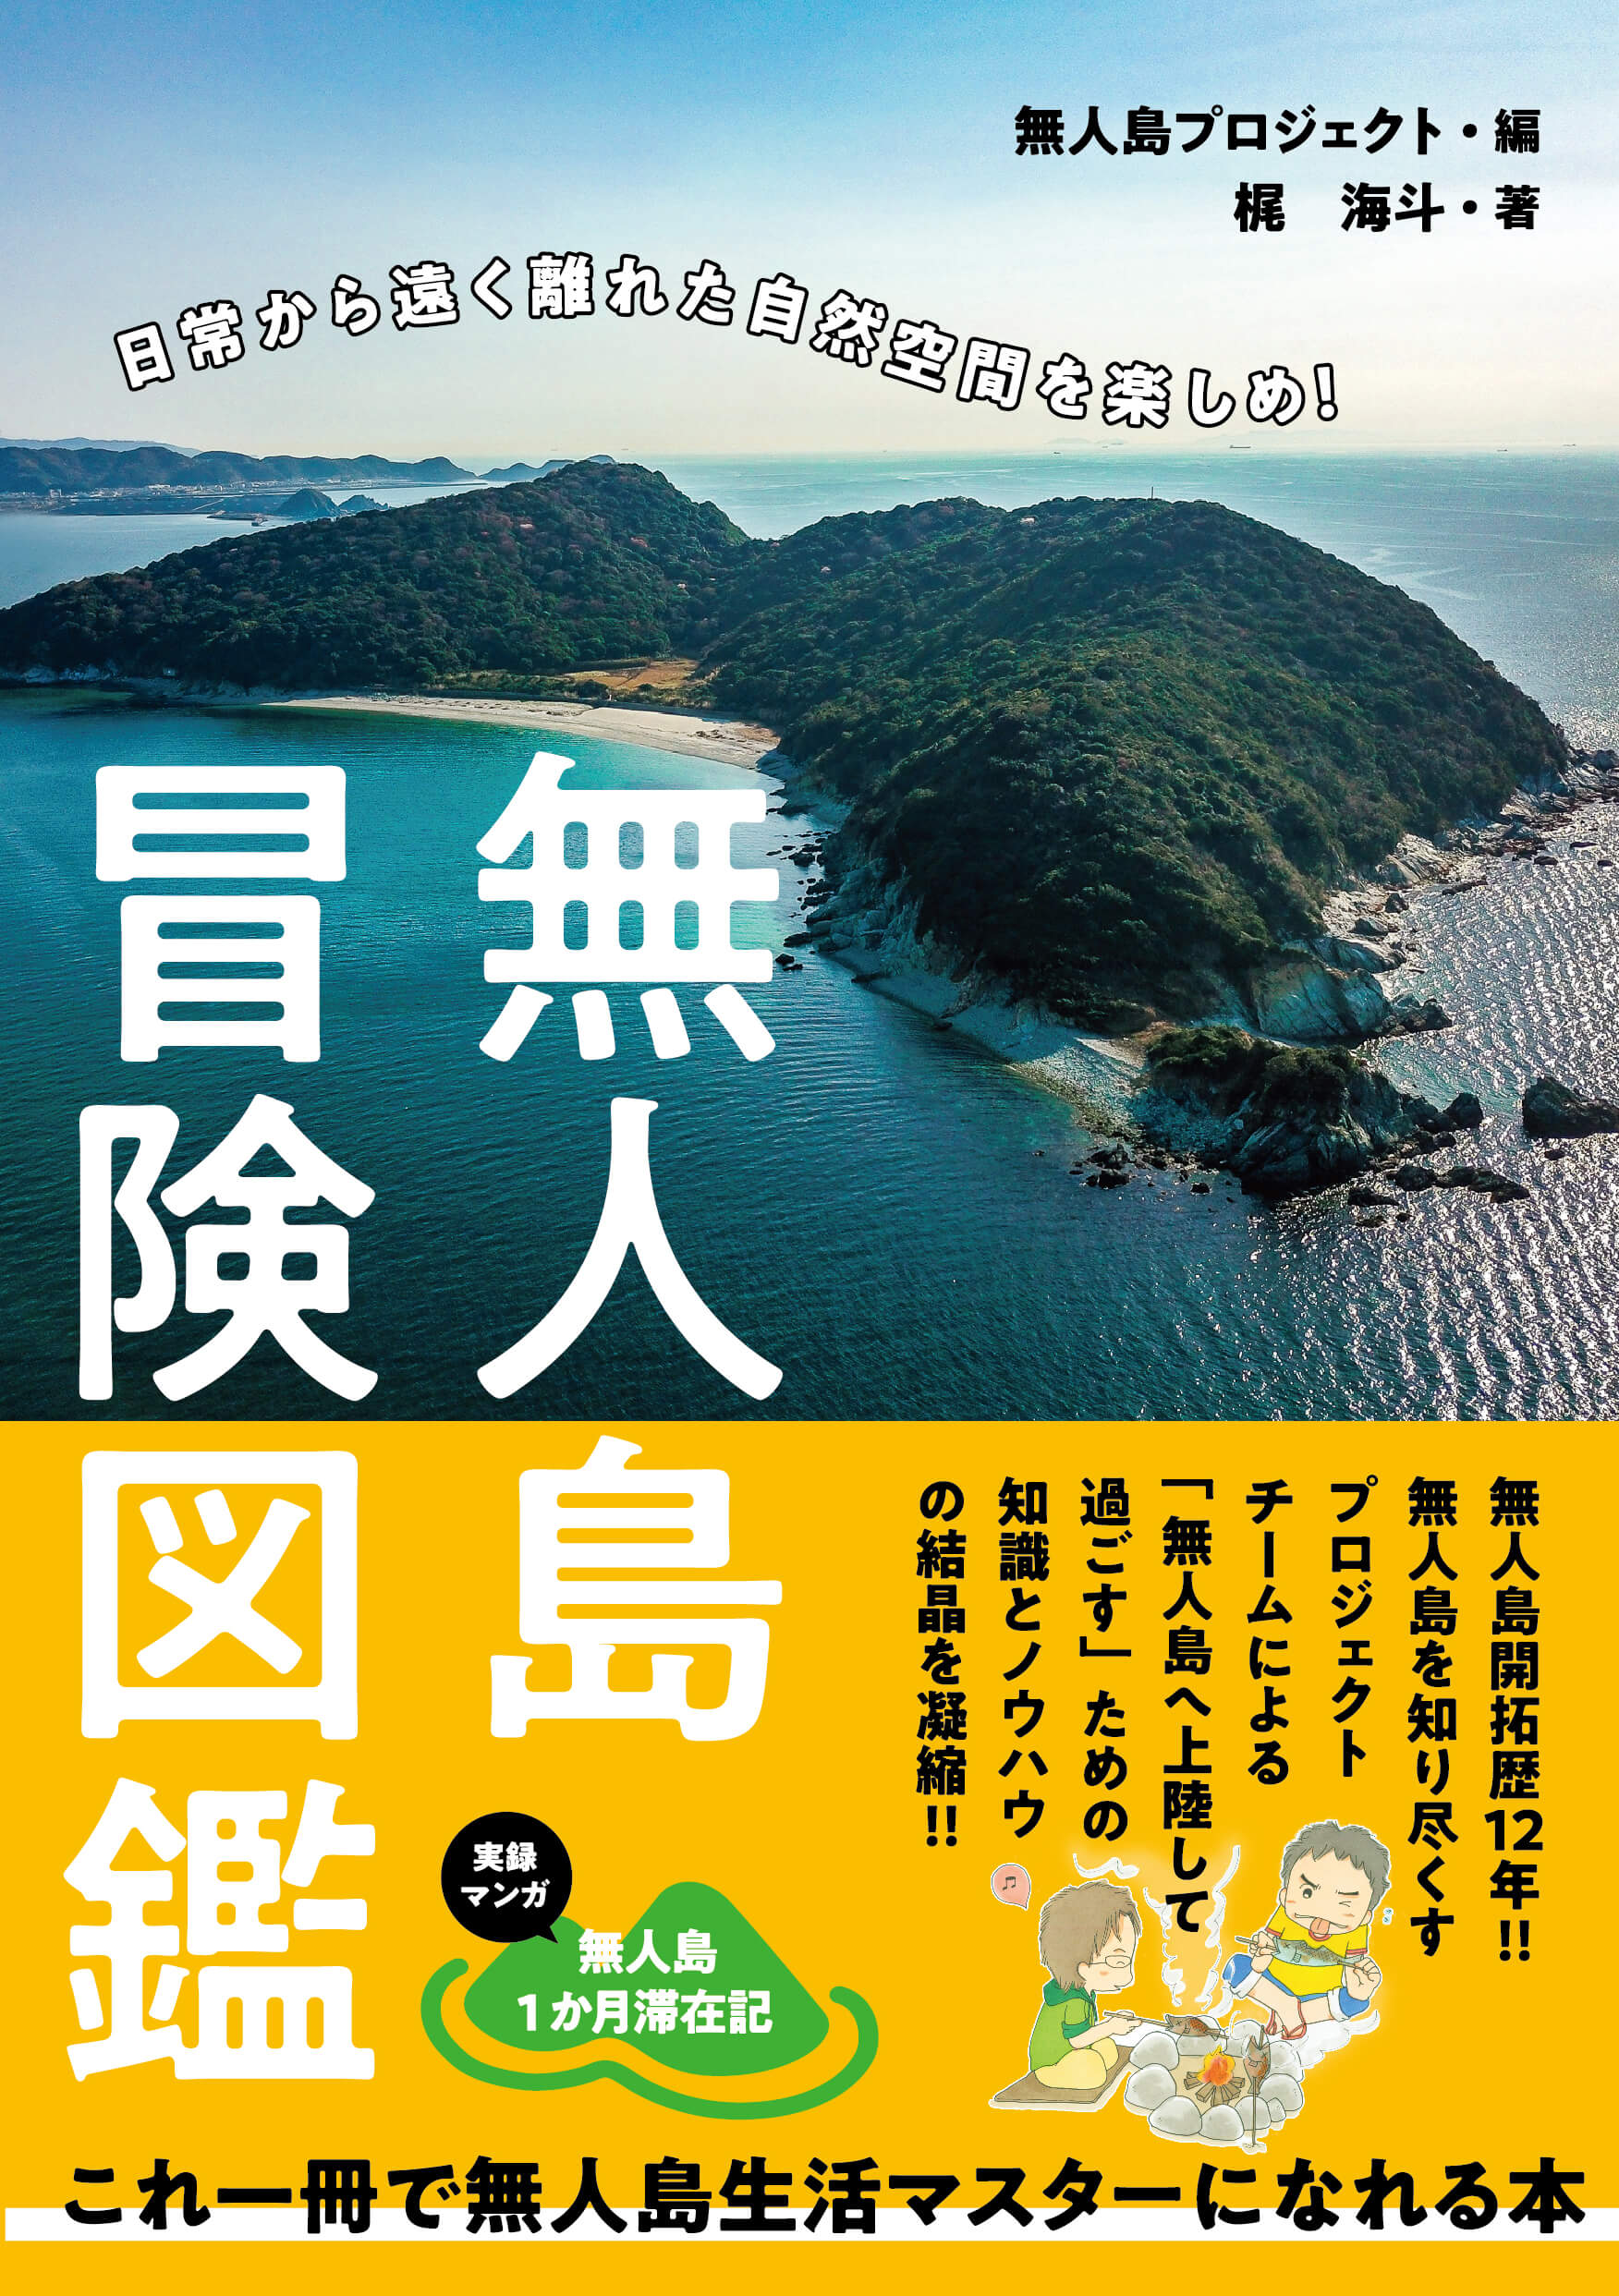 無人島プロジェクト初の出版本 無人島冒険図鑑 3 26発売決定 無人島プロジェクト